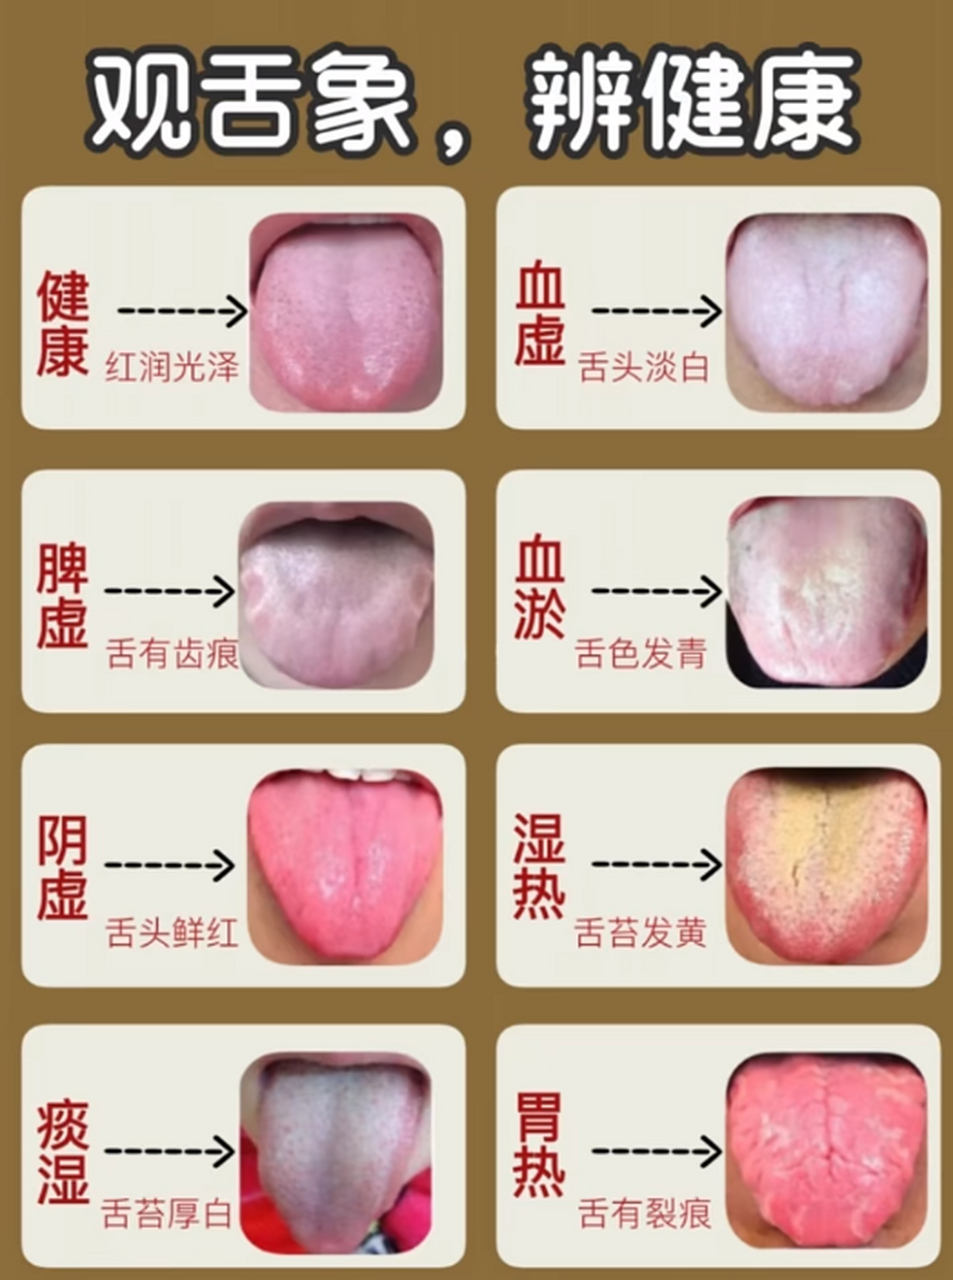 健康人的舌苔图片正常图片